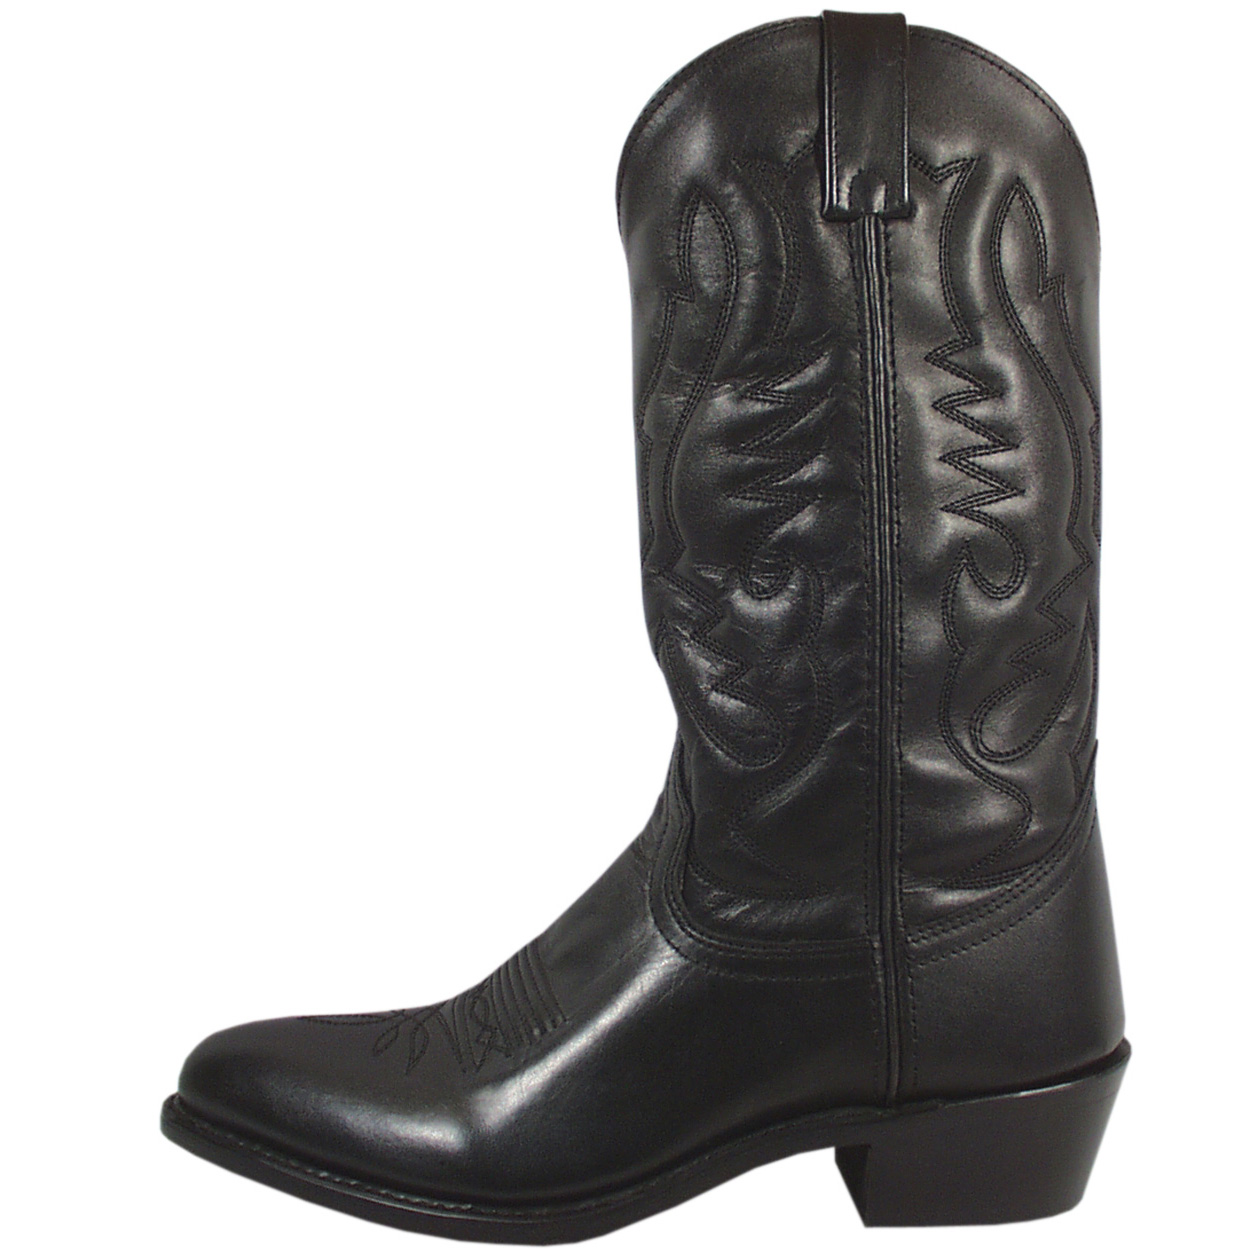 Wild West Boots #2996005 Men's, Color Black